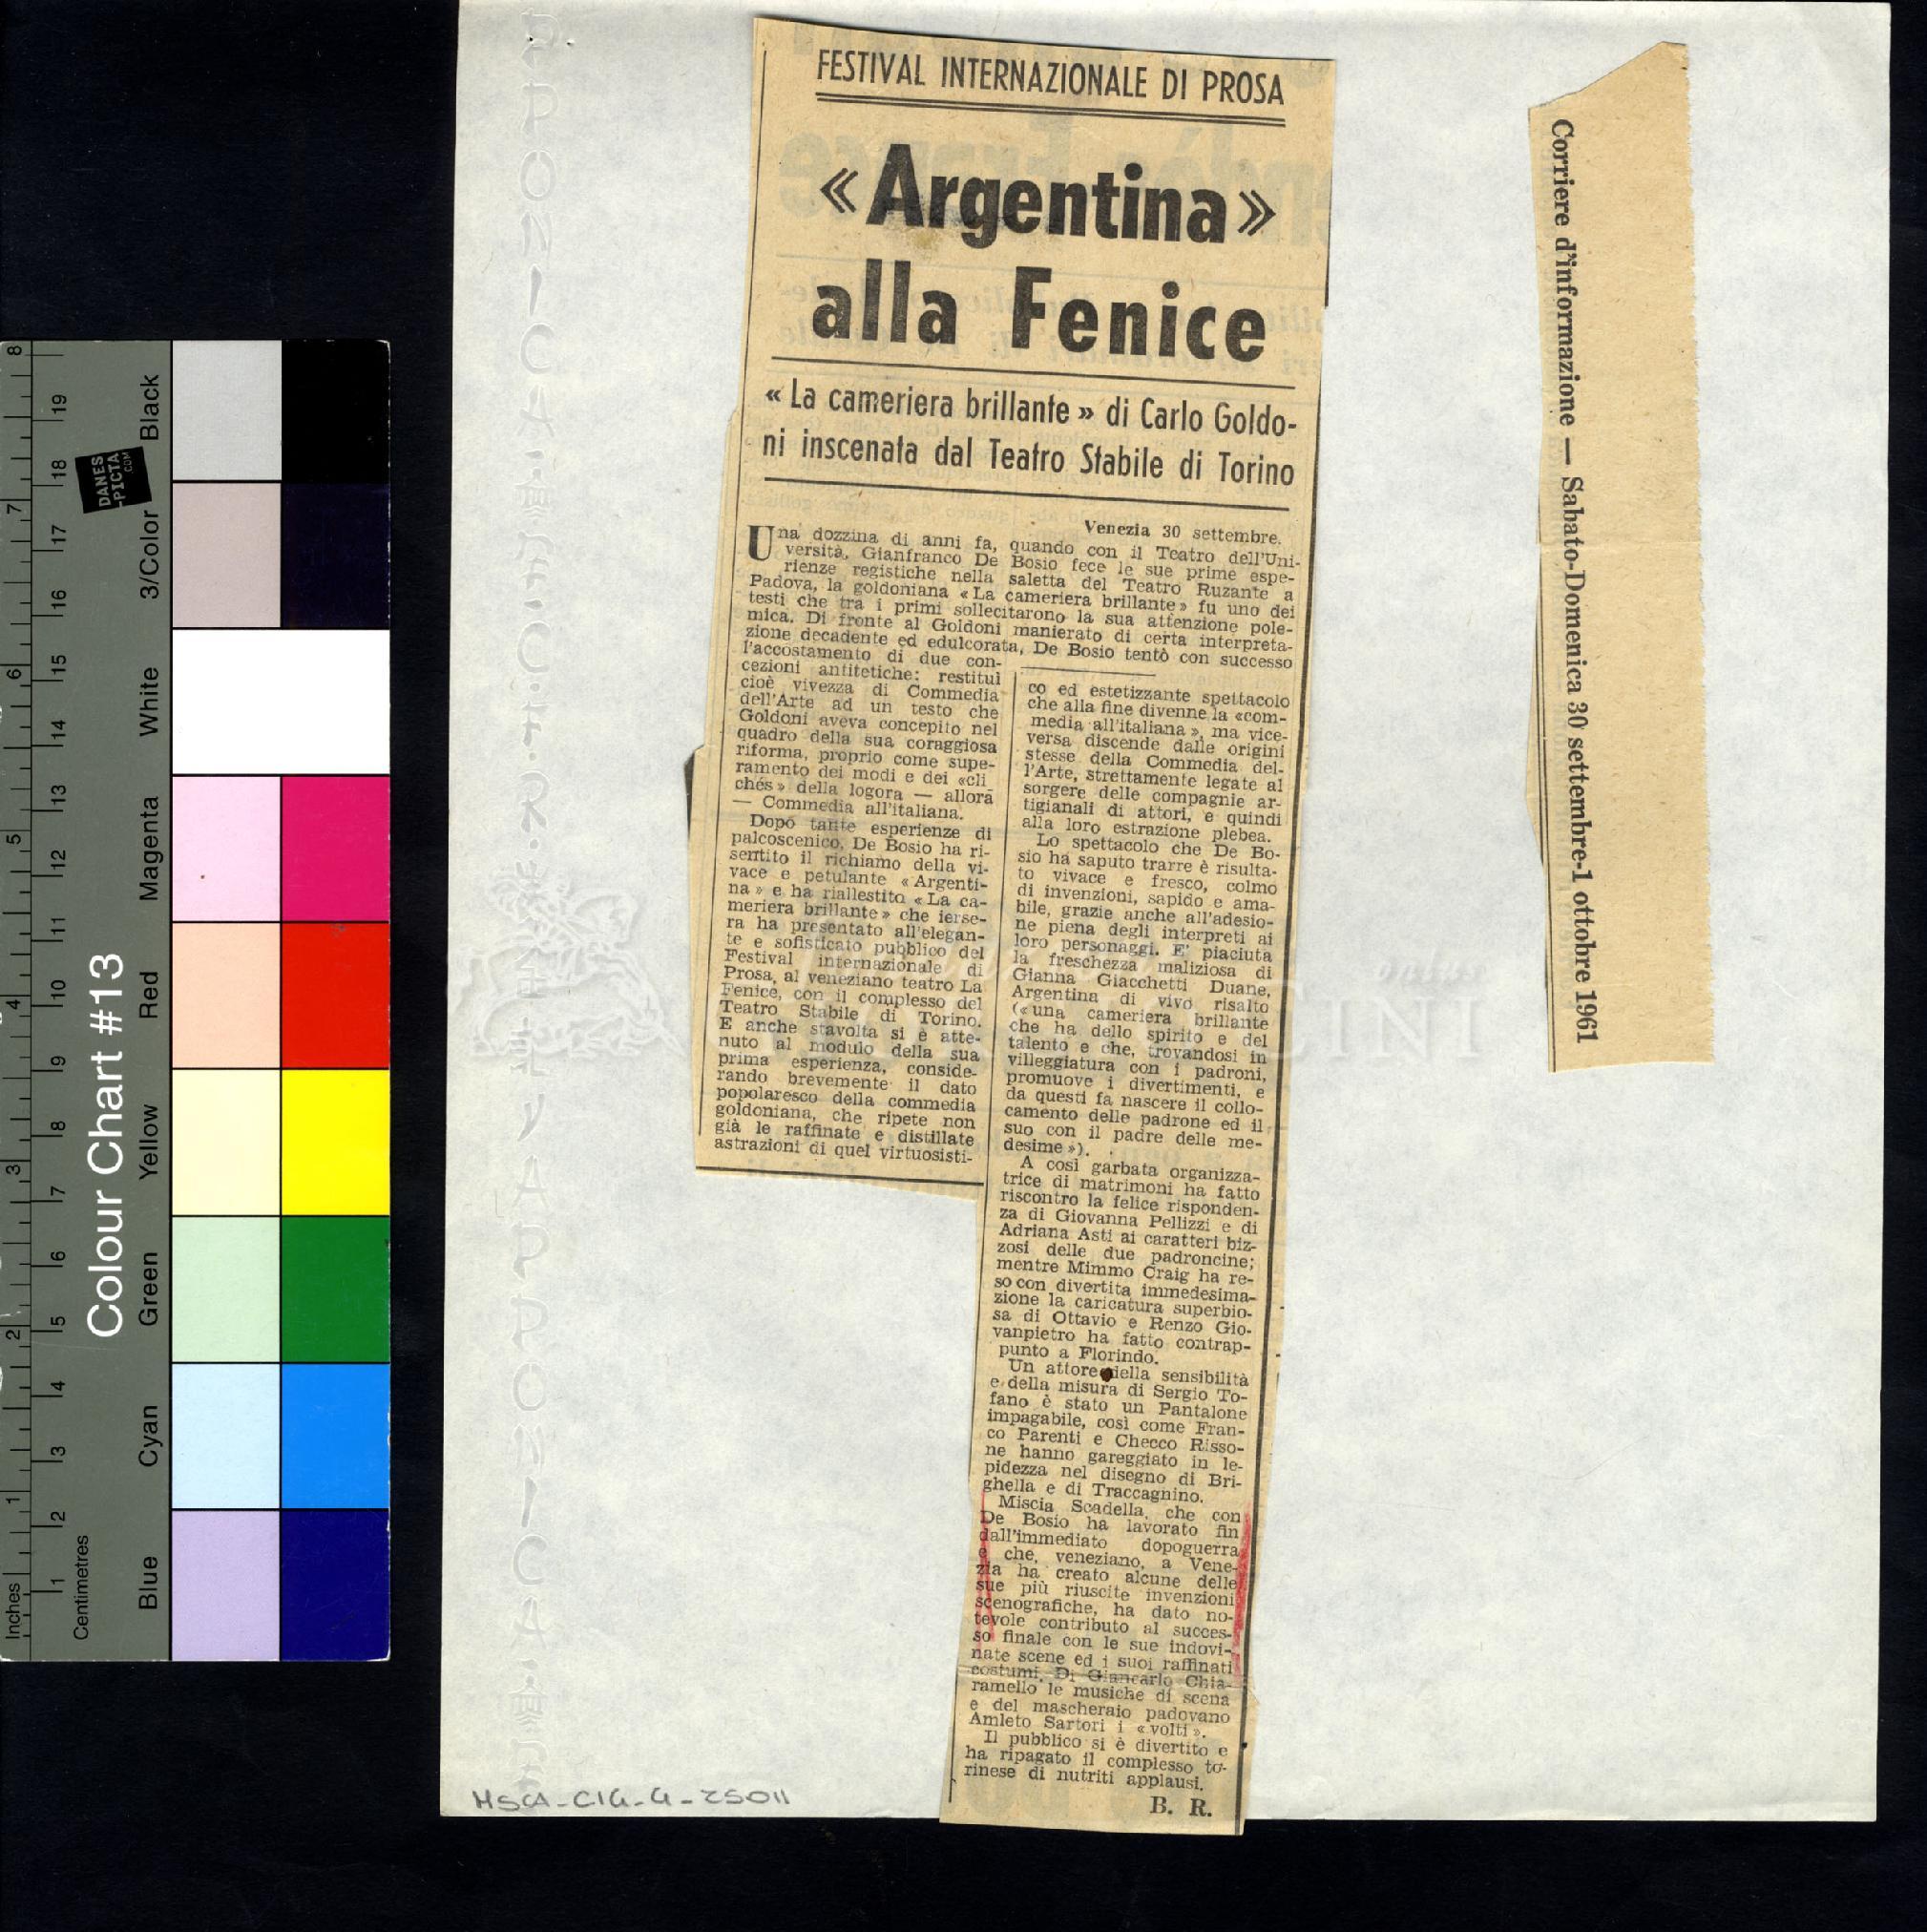 «Argentina» alla Fenice
				 : Festival internazionale di prosa 30 settembre 1961 - 01 ottobre 1961